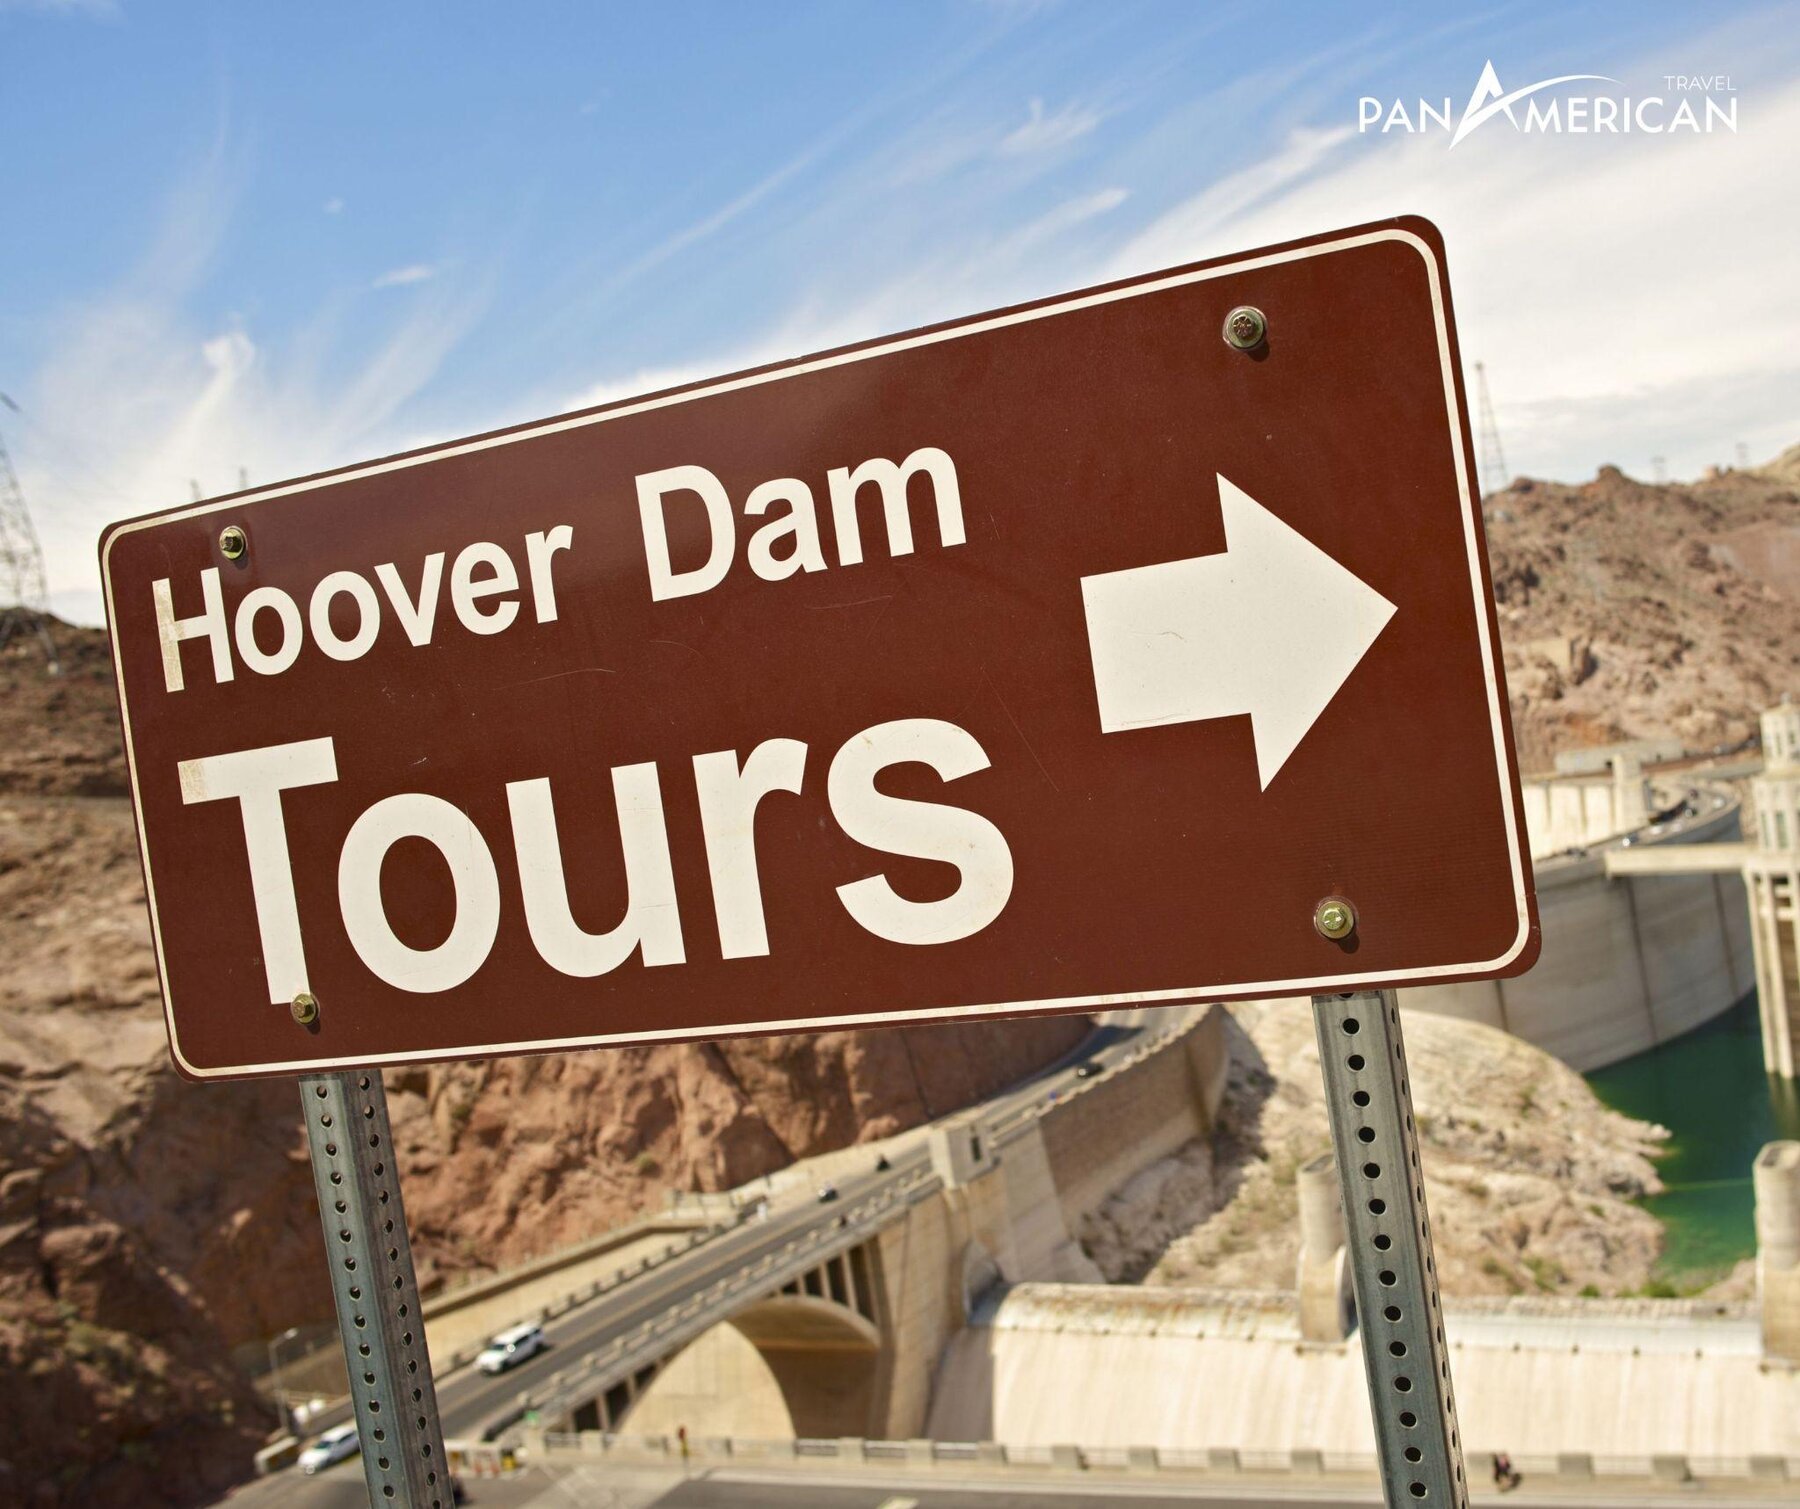 Tour khám phá Hoover Dam có giá từ 10 - 30$